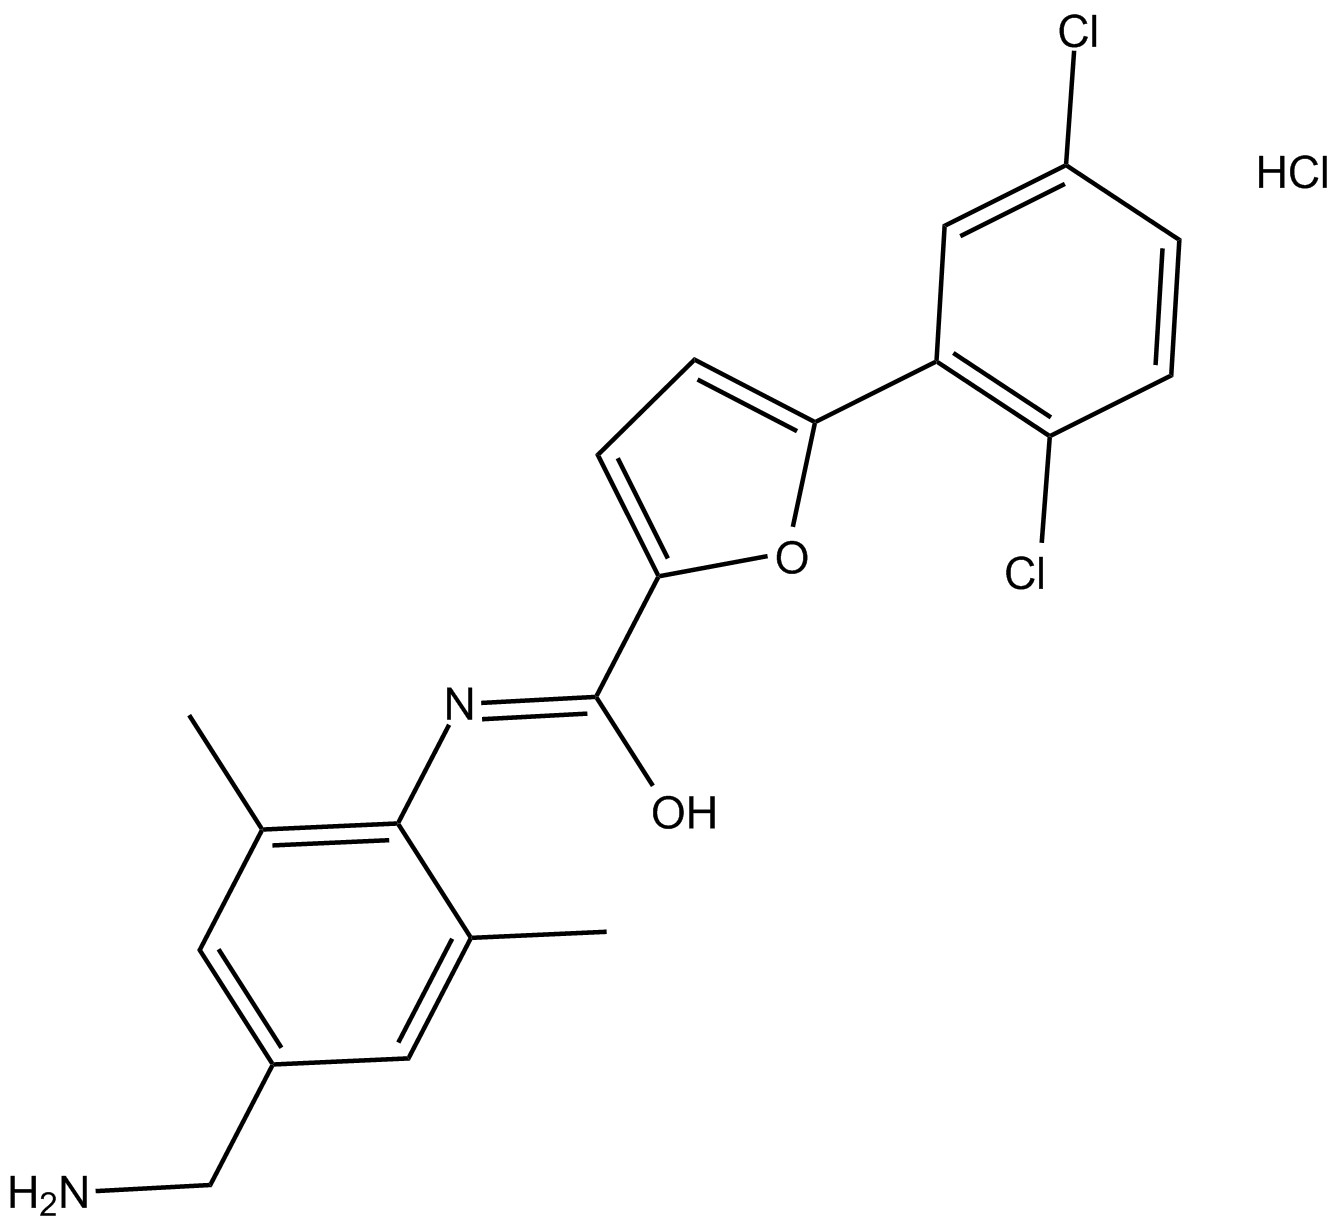 CYM 50358 hydrochloride